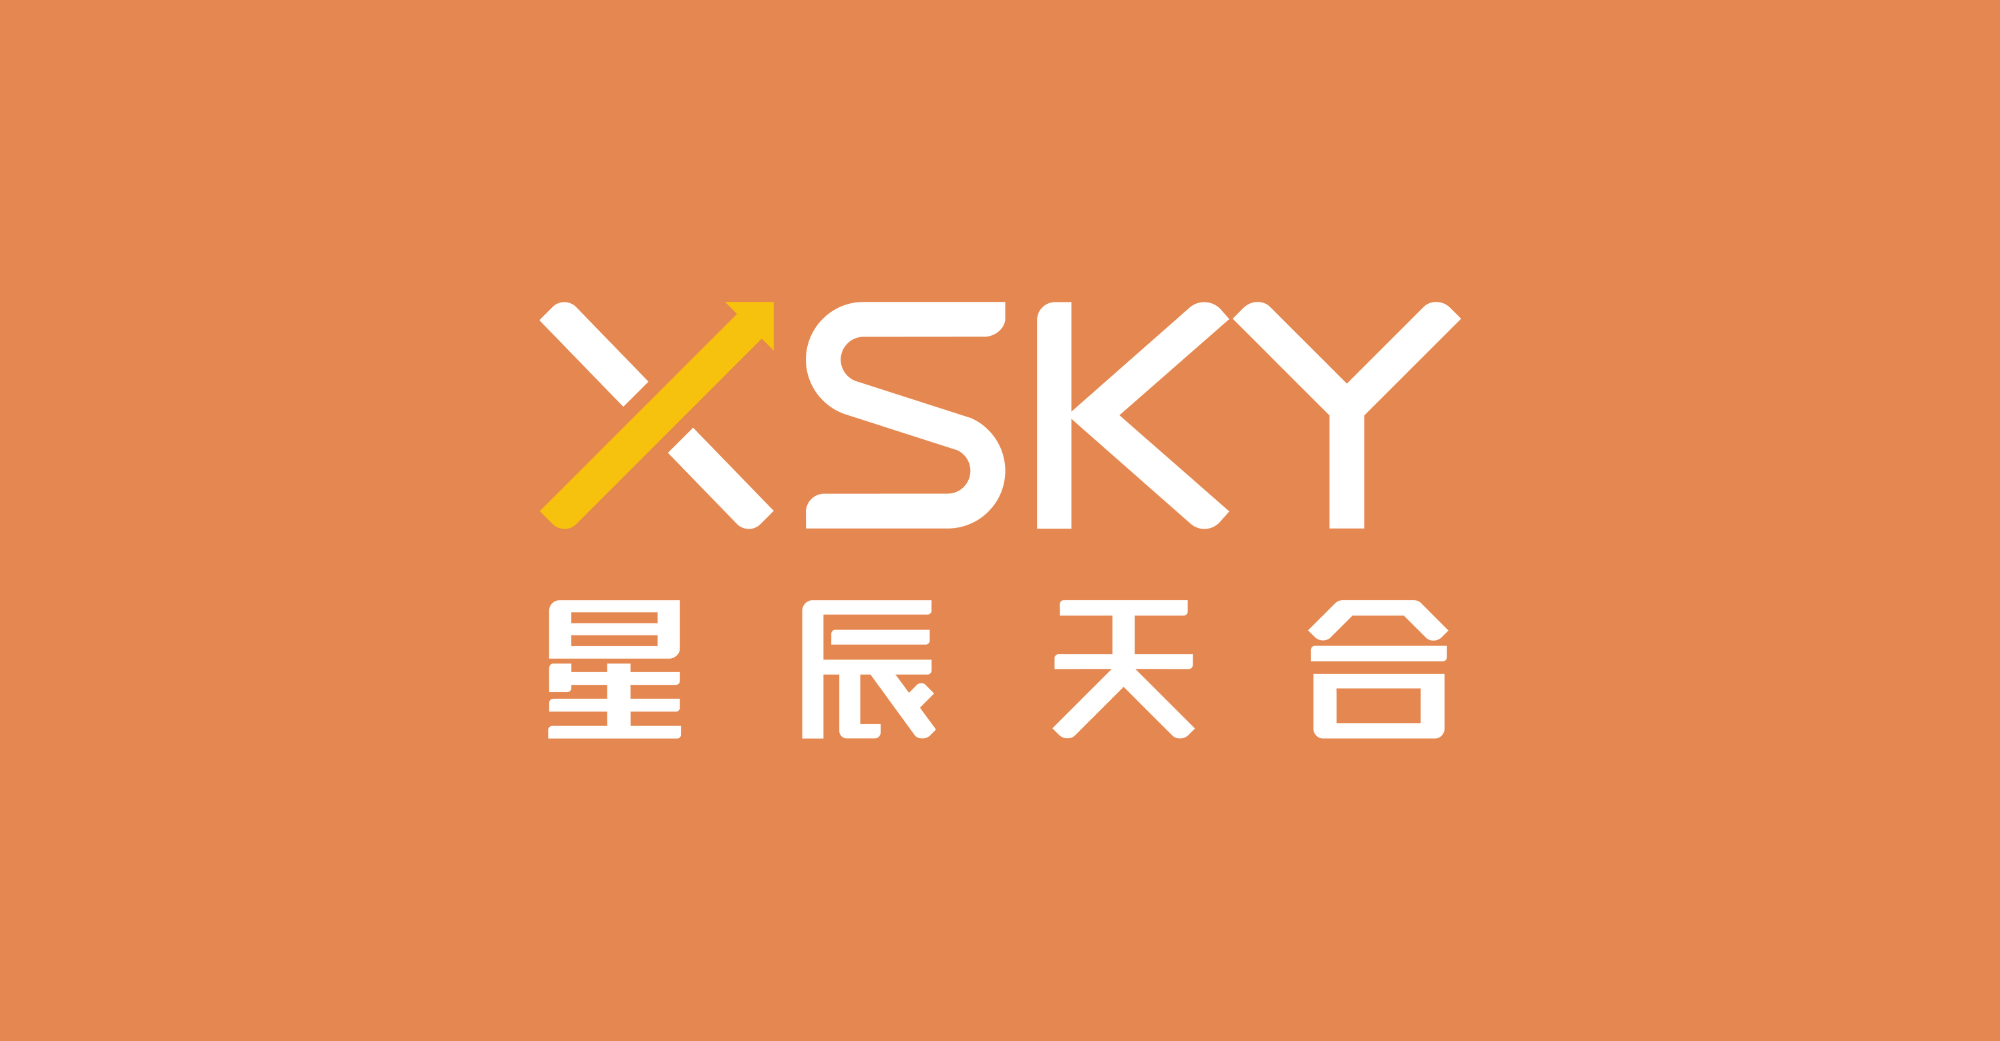 Ang XSky ay tumanggap ng USD 62,8 milyon para sa F round financing, at ang Source Capital ay lumahok sa pamumuhunan